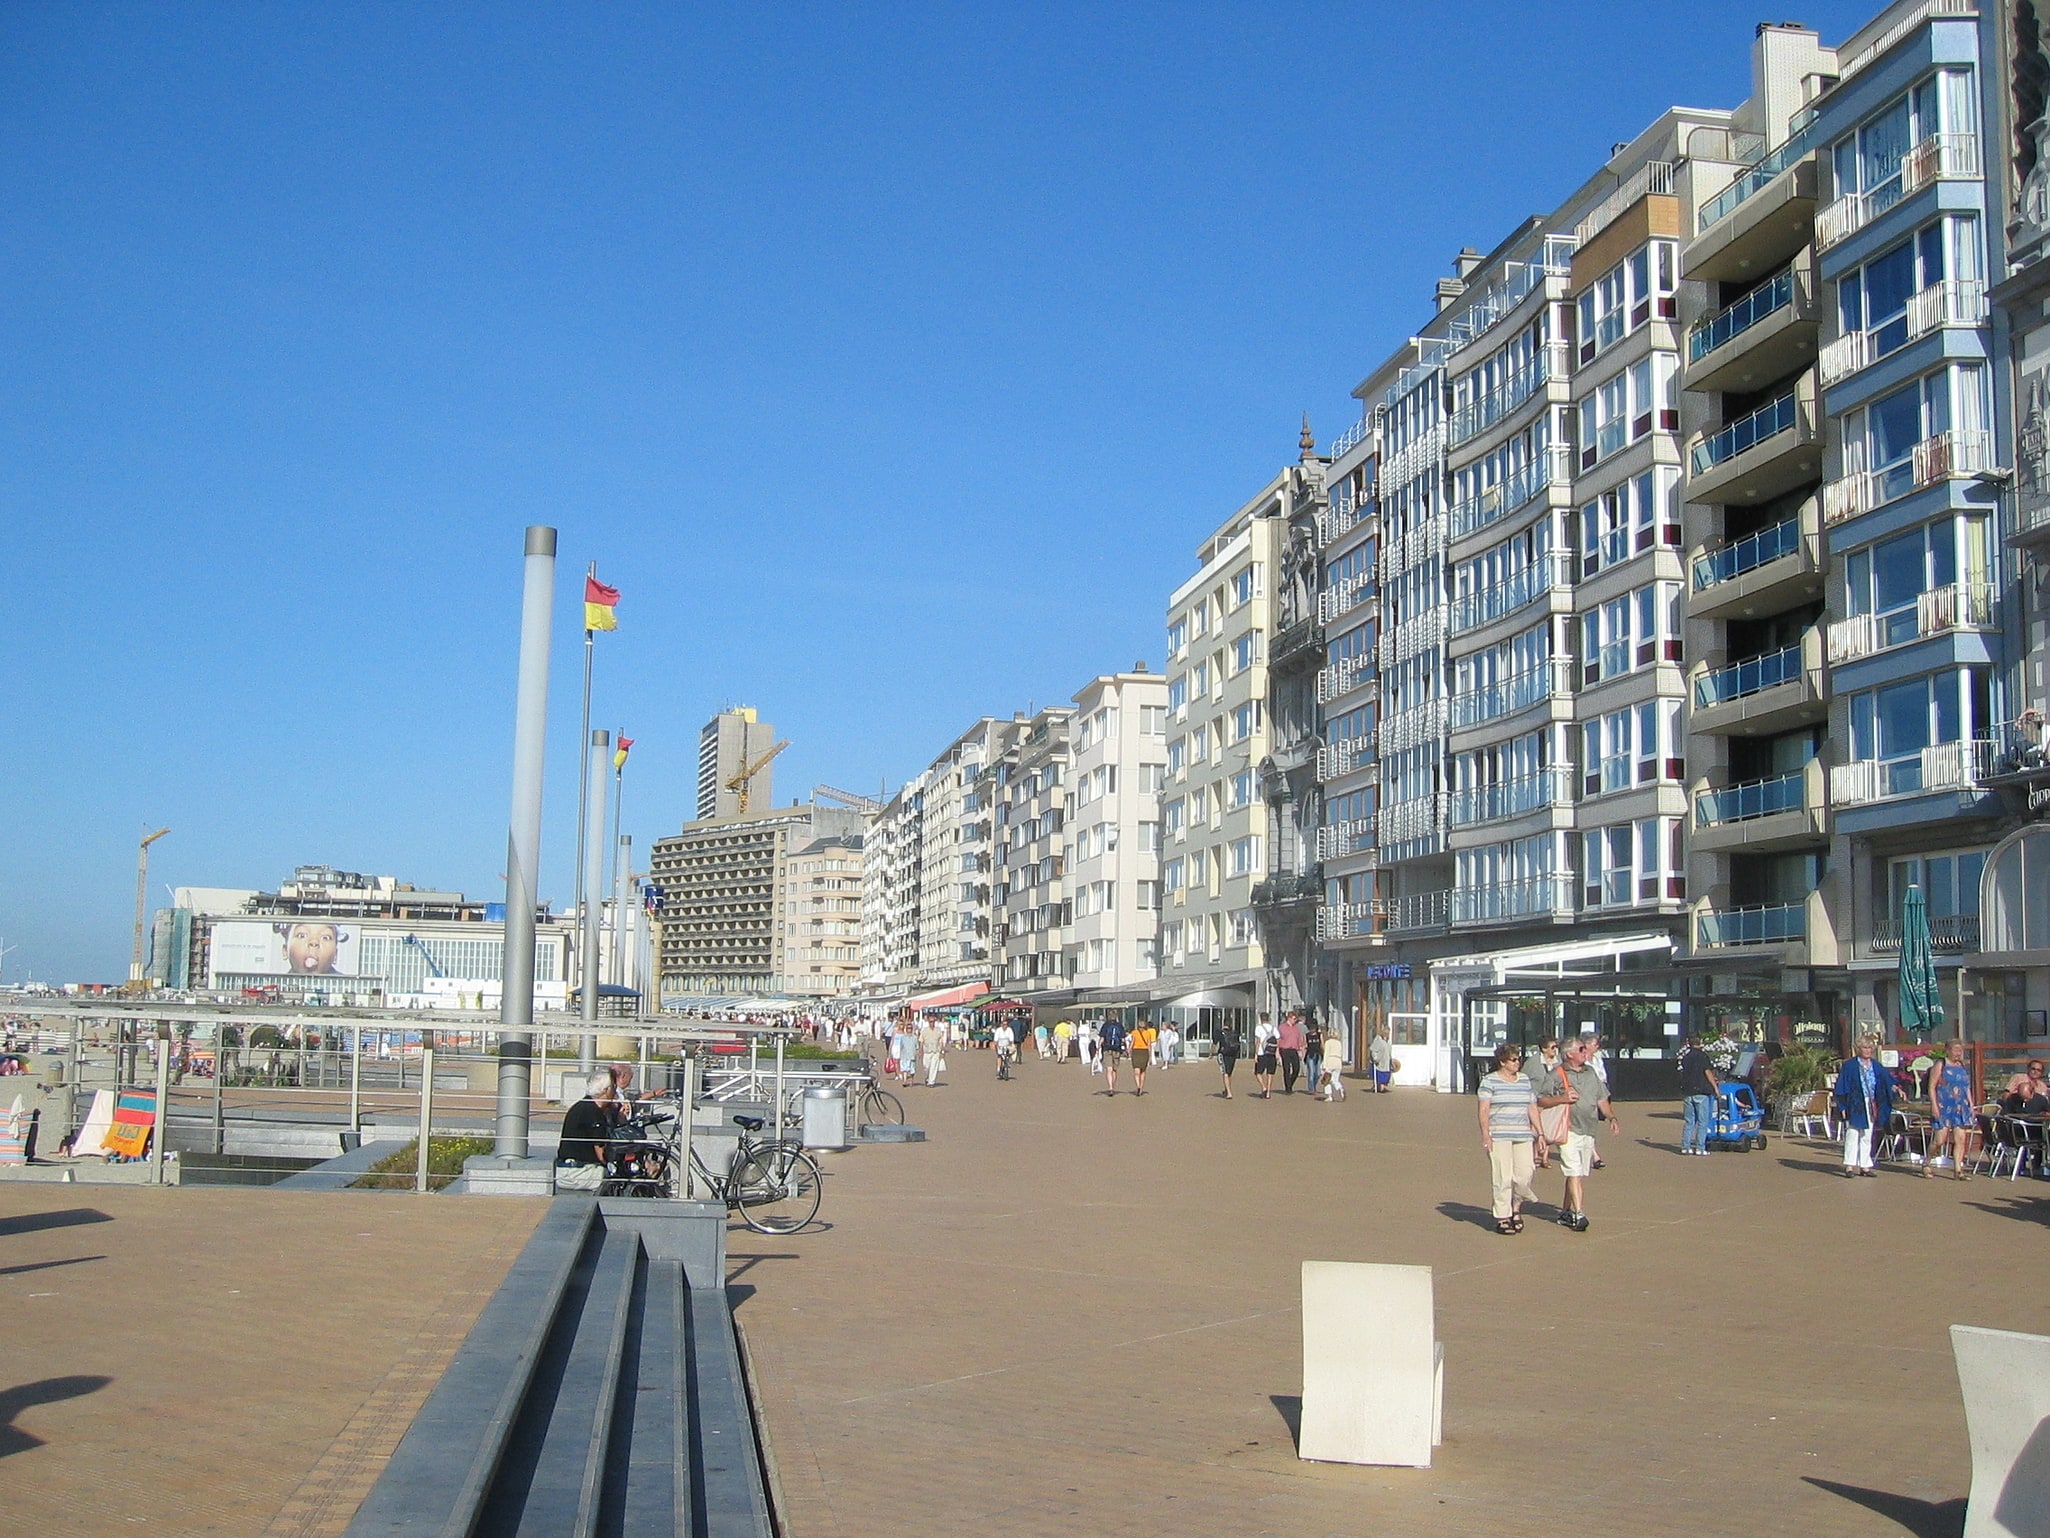 Ostend, Belgium